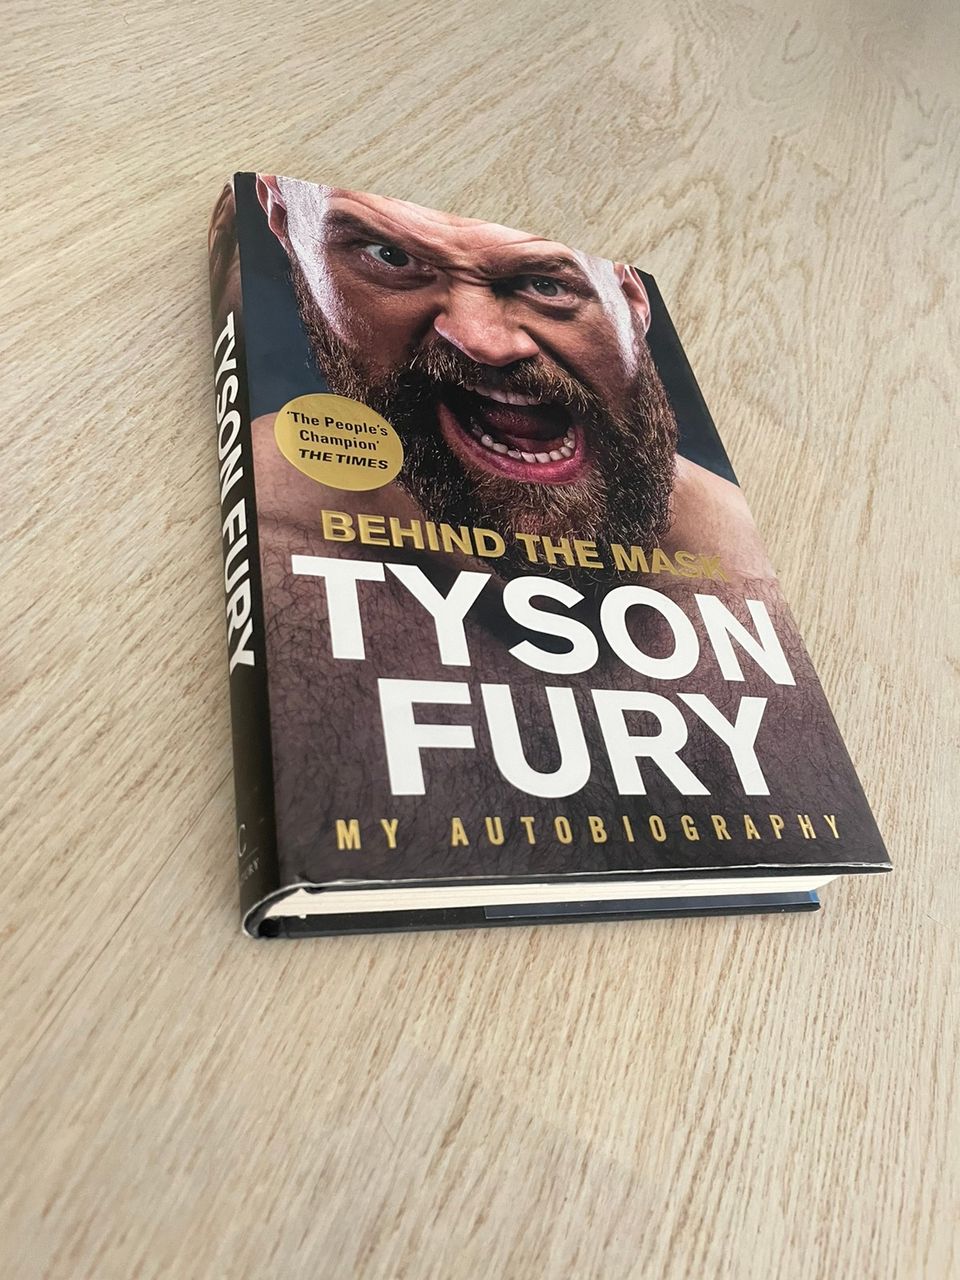 Tyson fury behind the mask kirja